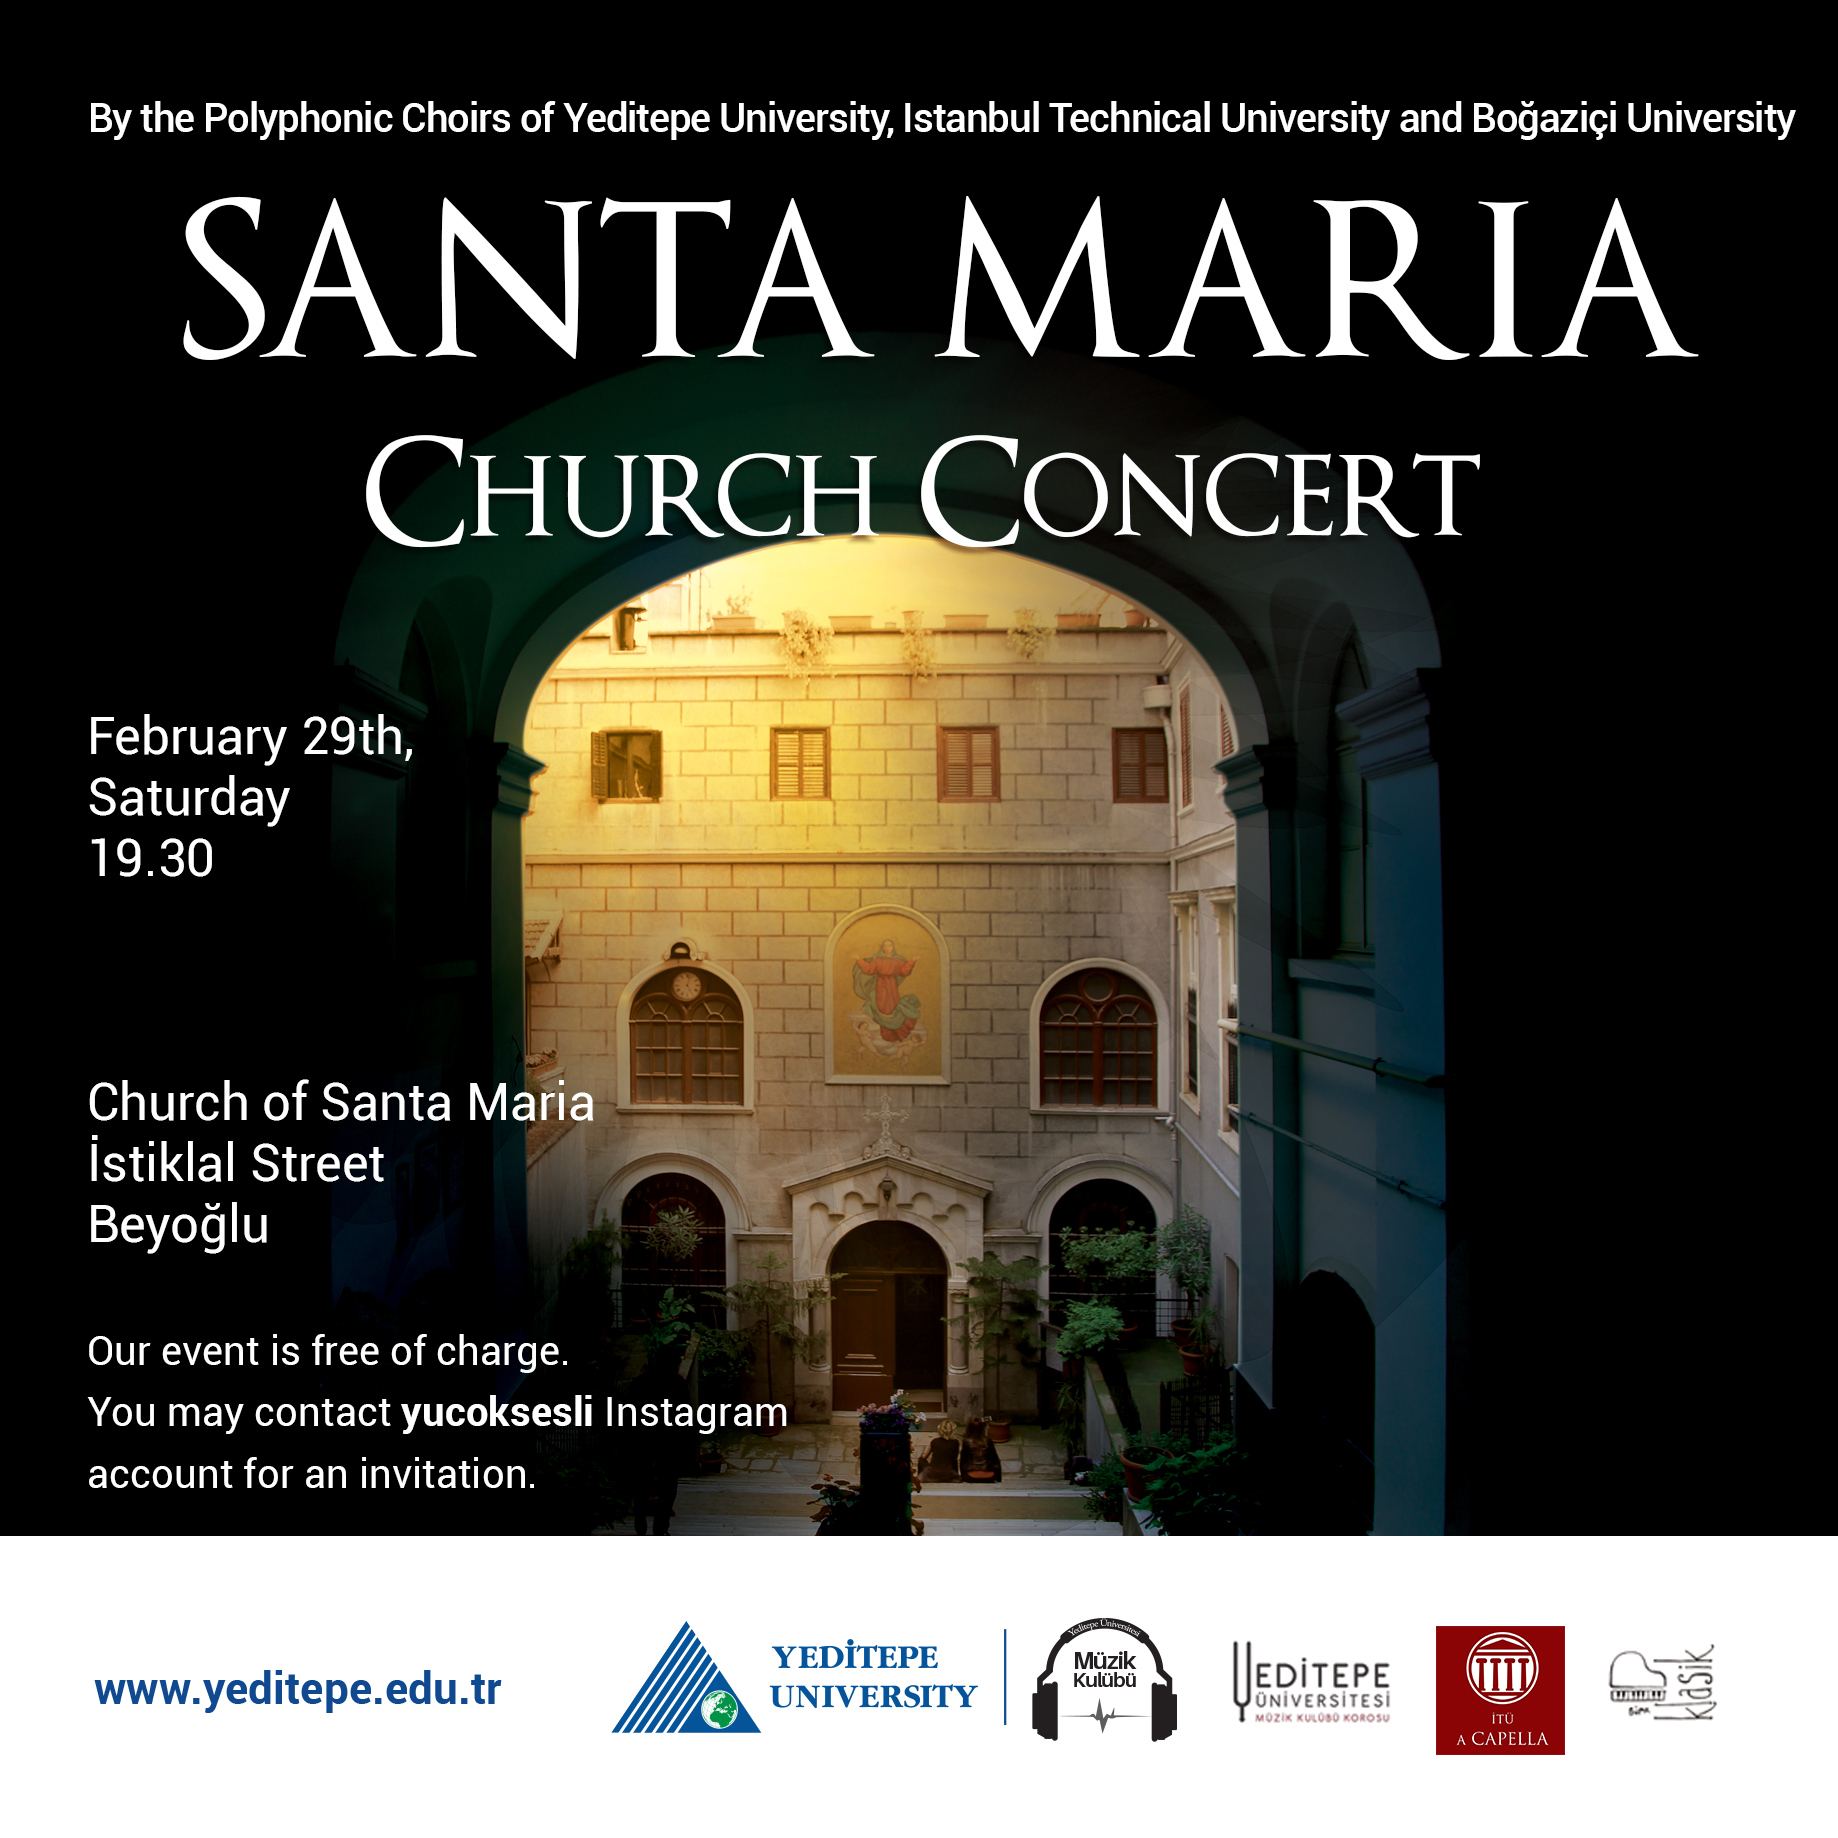 Santa Maria Church Concert